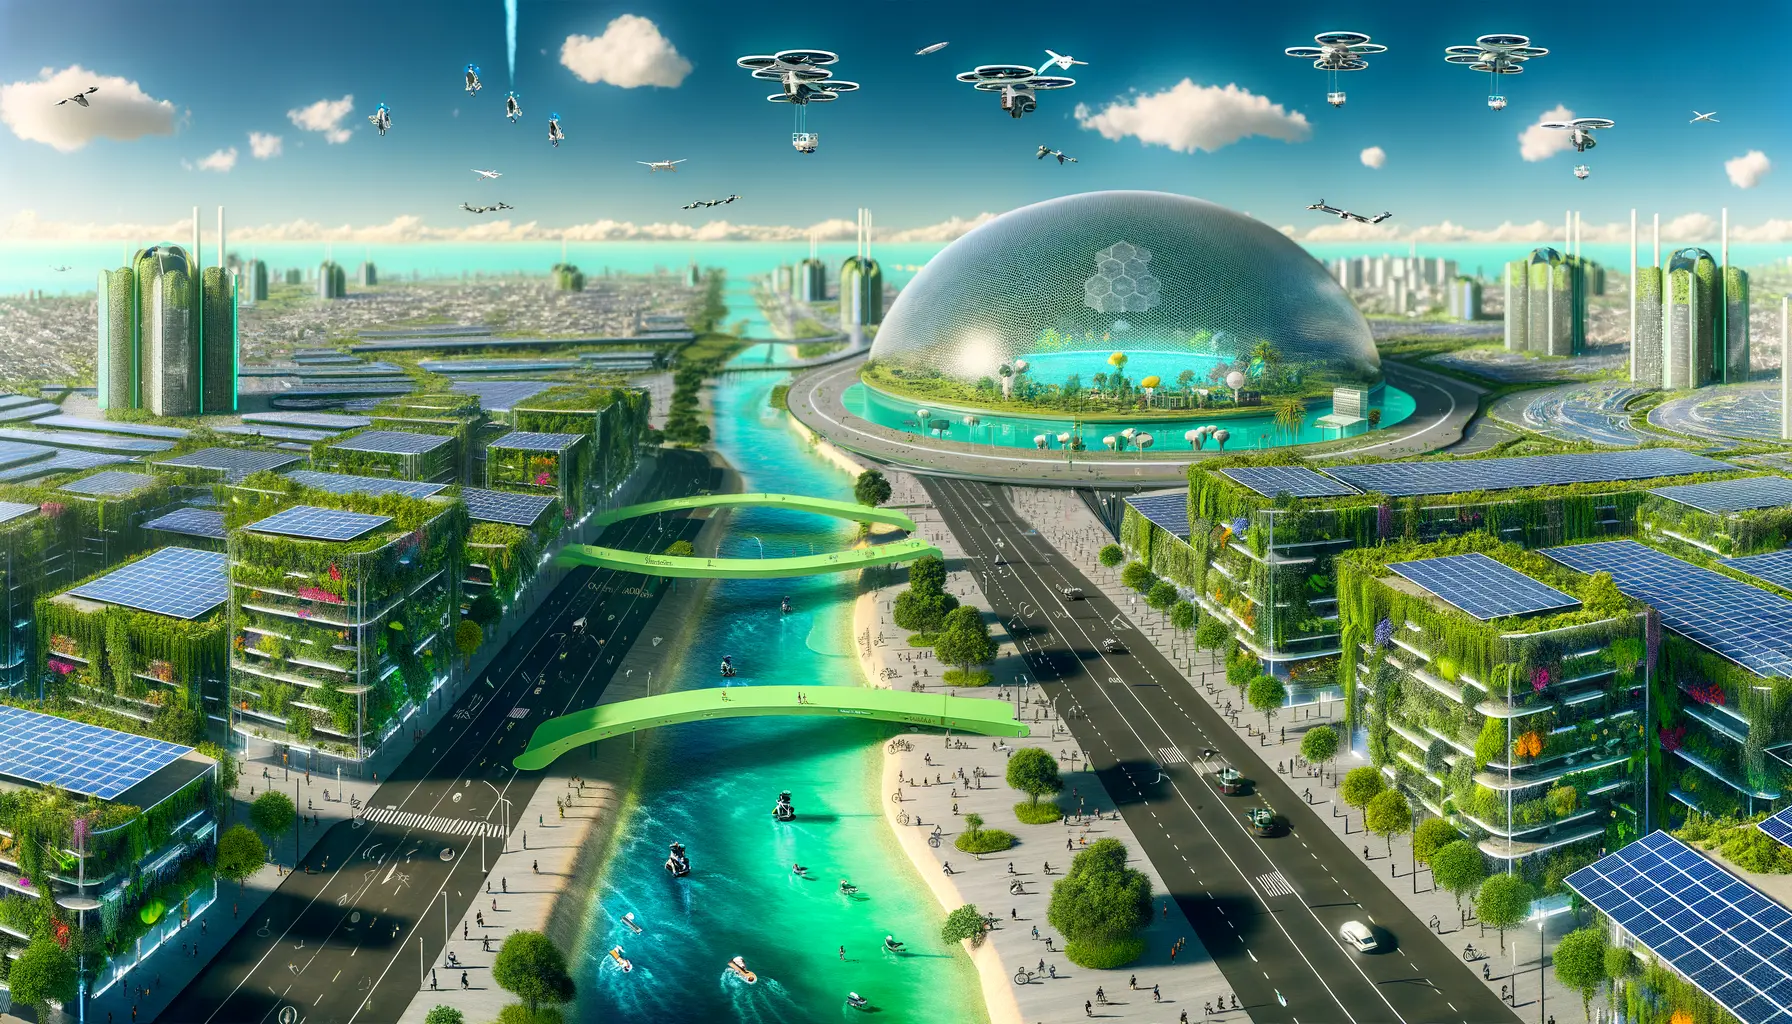 Futuristische Stadtdarstellung im Einklang mit der Natur